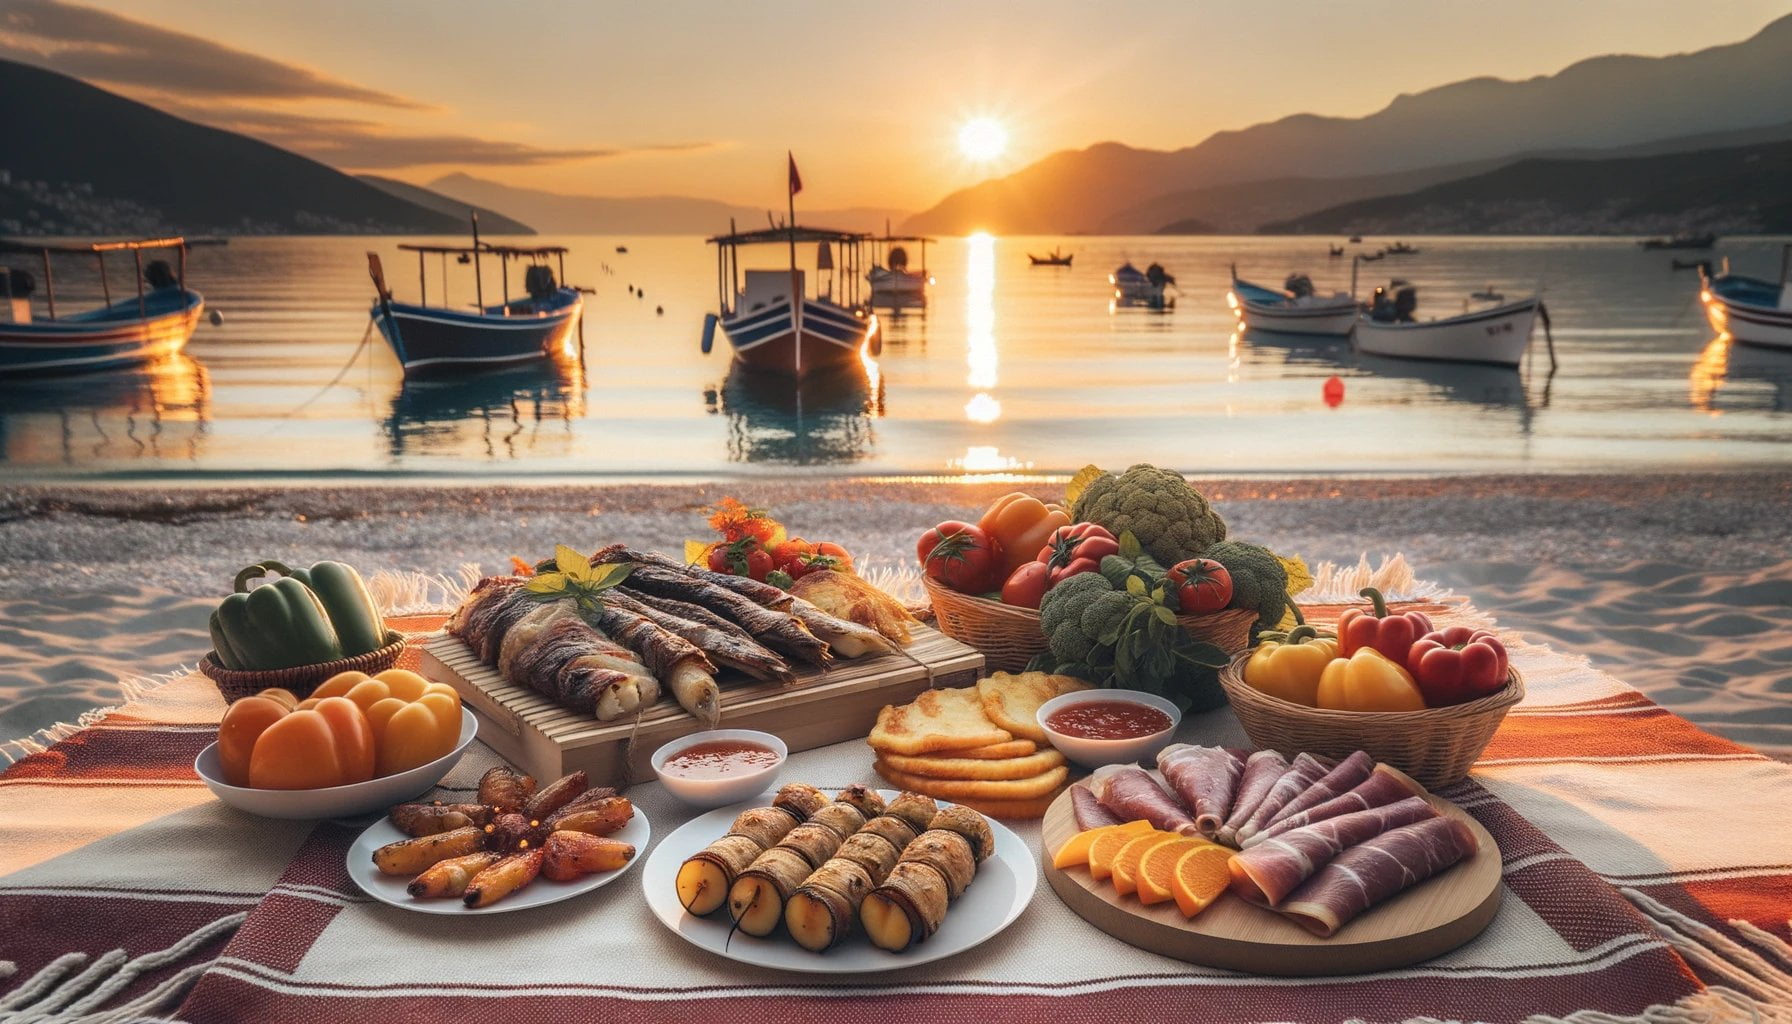 Albania cuisine